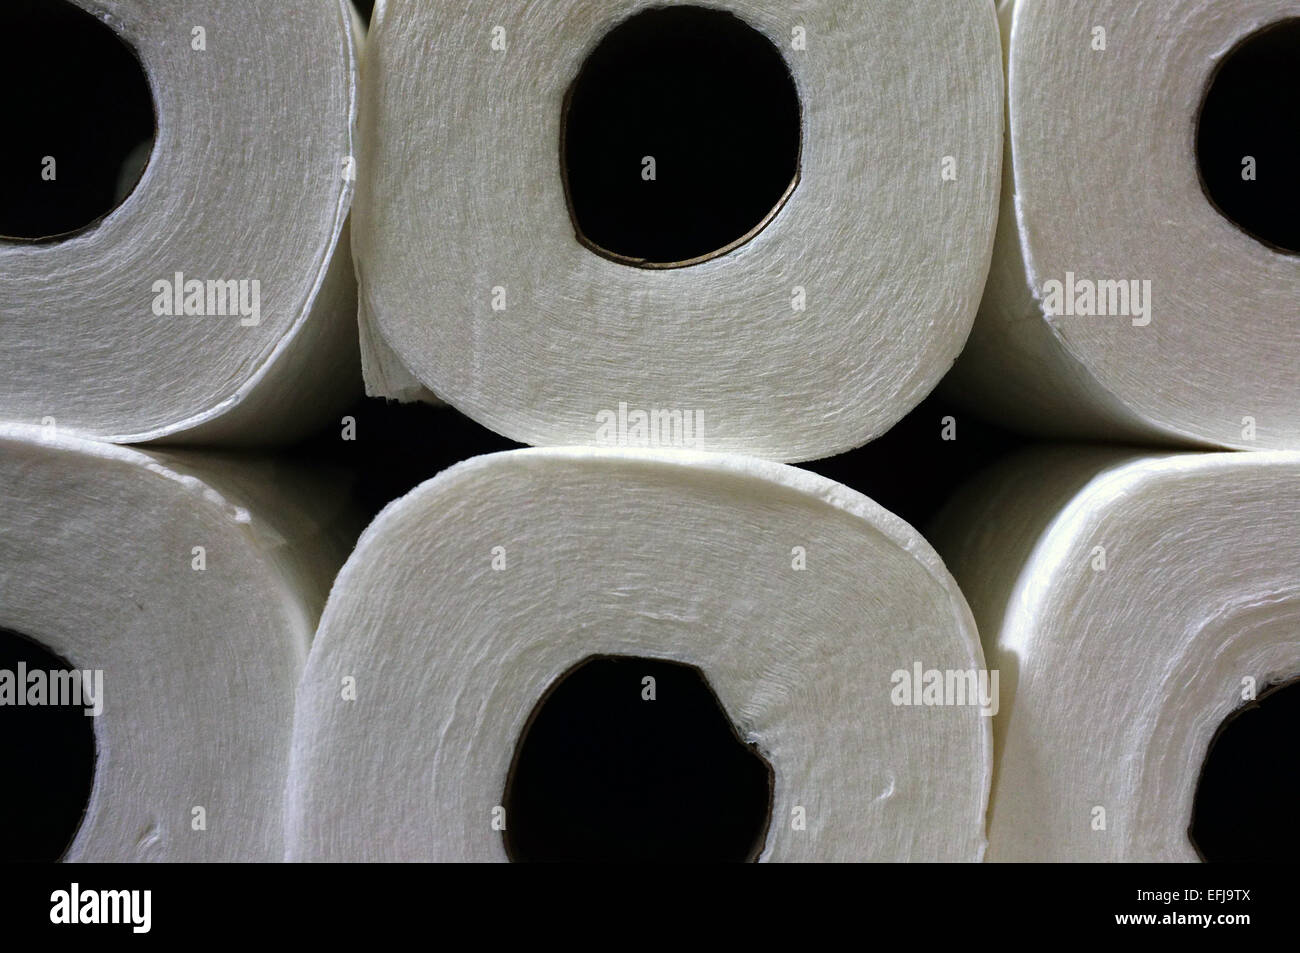 Ein Stapel von WC-Papier Rollen. Stockfoto